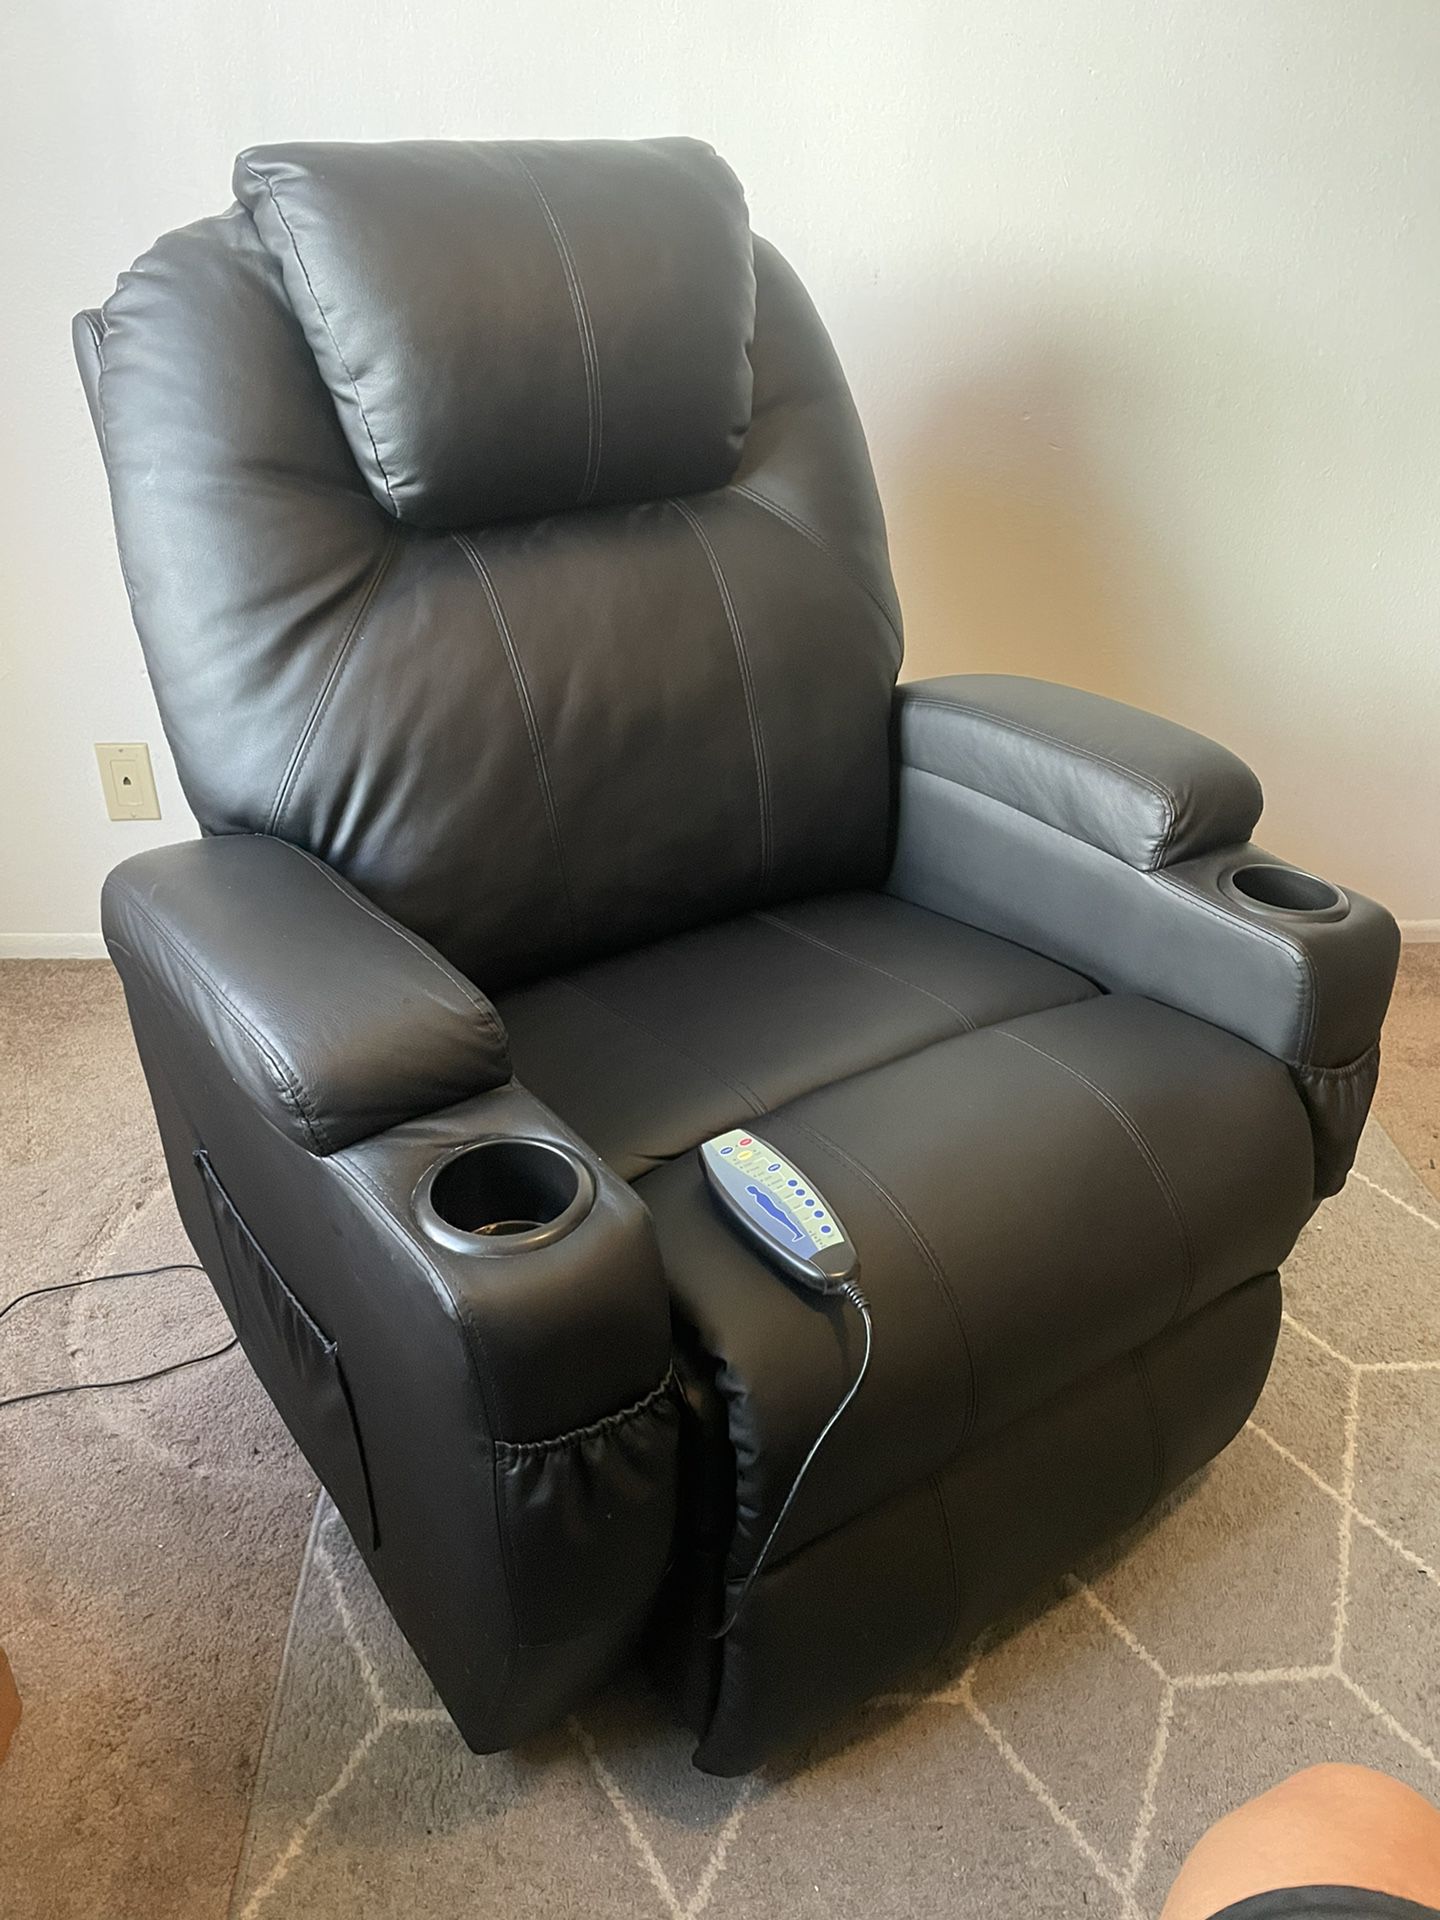 Supper Comfy Reclining/massaging Chair 